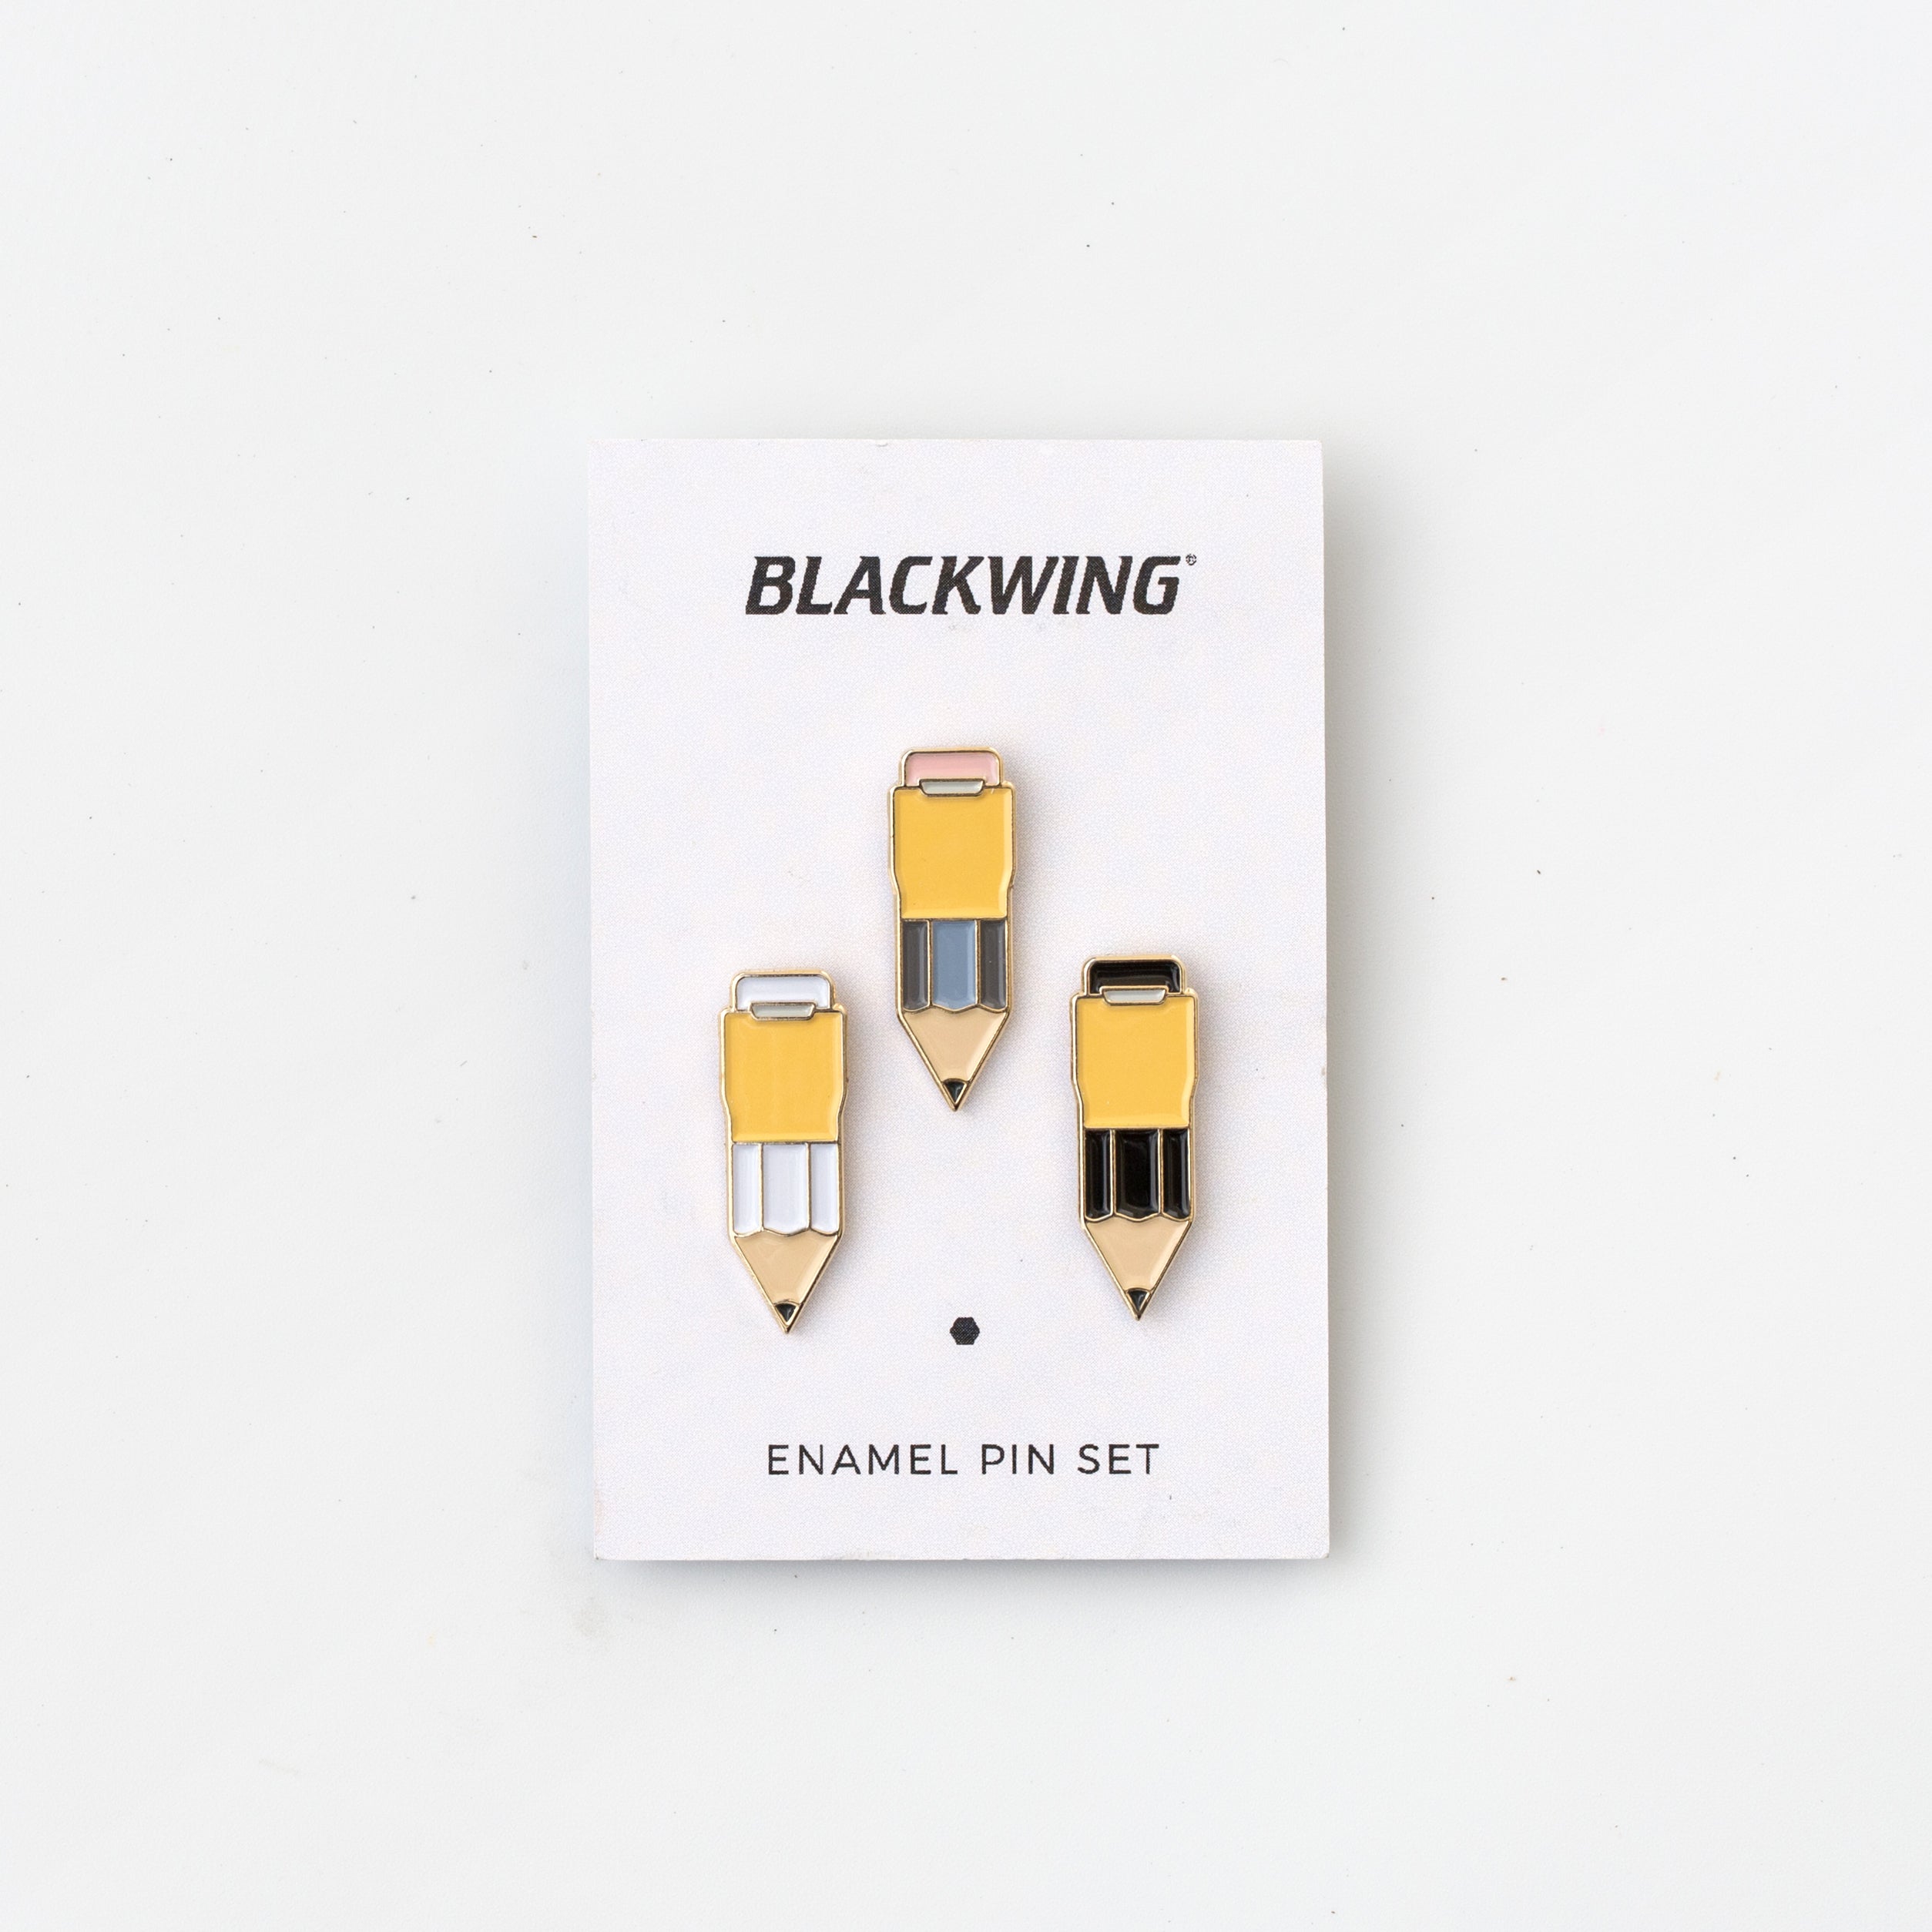 Blackwing Pins - Package